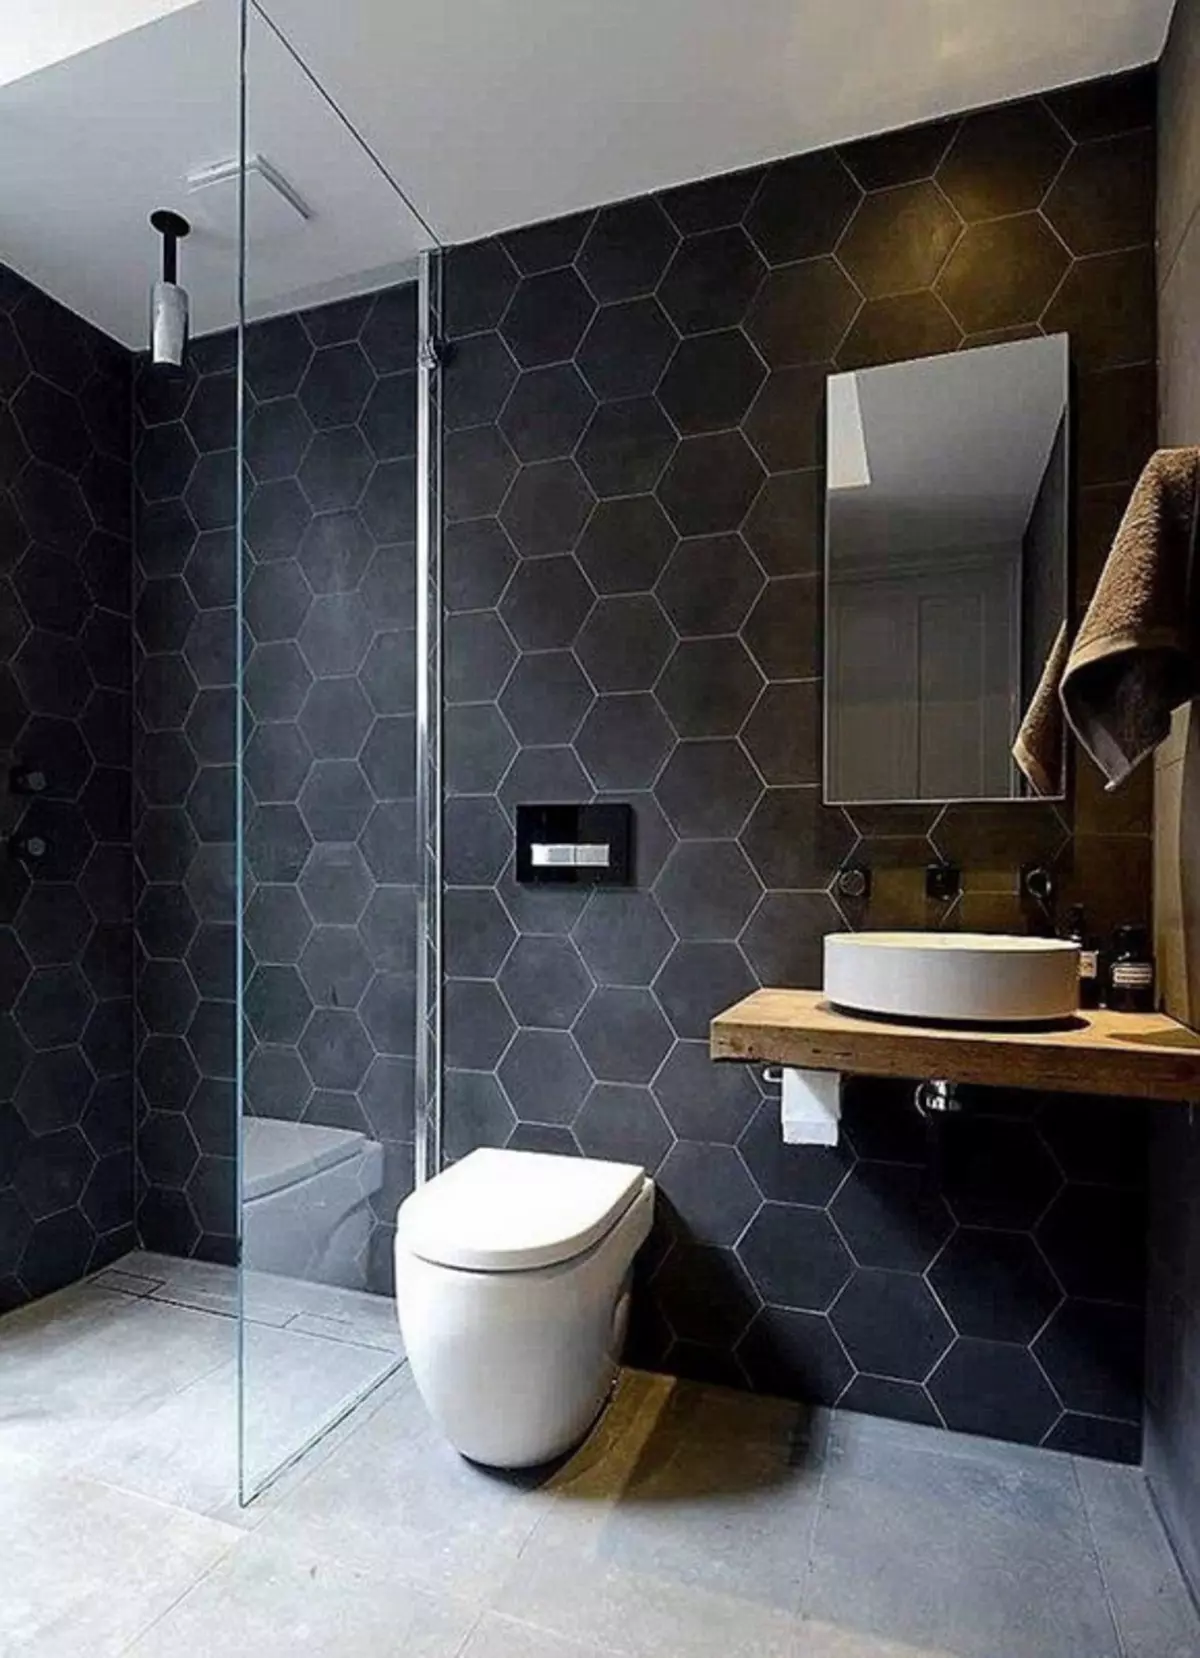 توالت سیاه (67 عکس): طراحی توالت در رنگ های سیاه و سفید، انتخاب یک توالت رنگ تیره در یک آپارتمان، به پایان رساندن با کاشی های سیاه و قرمز 10501_7